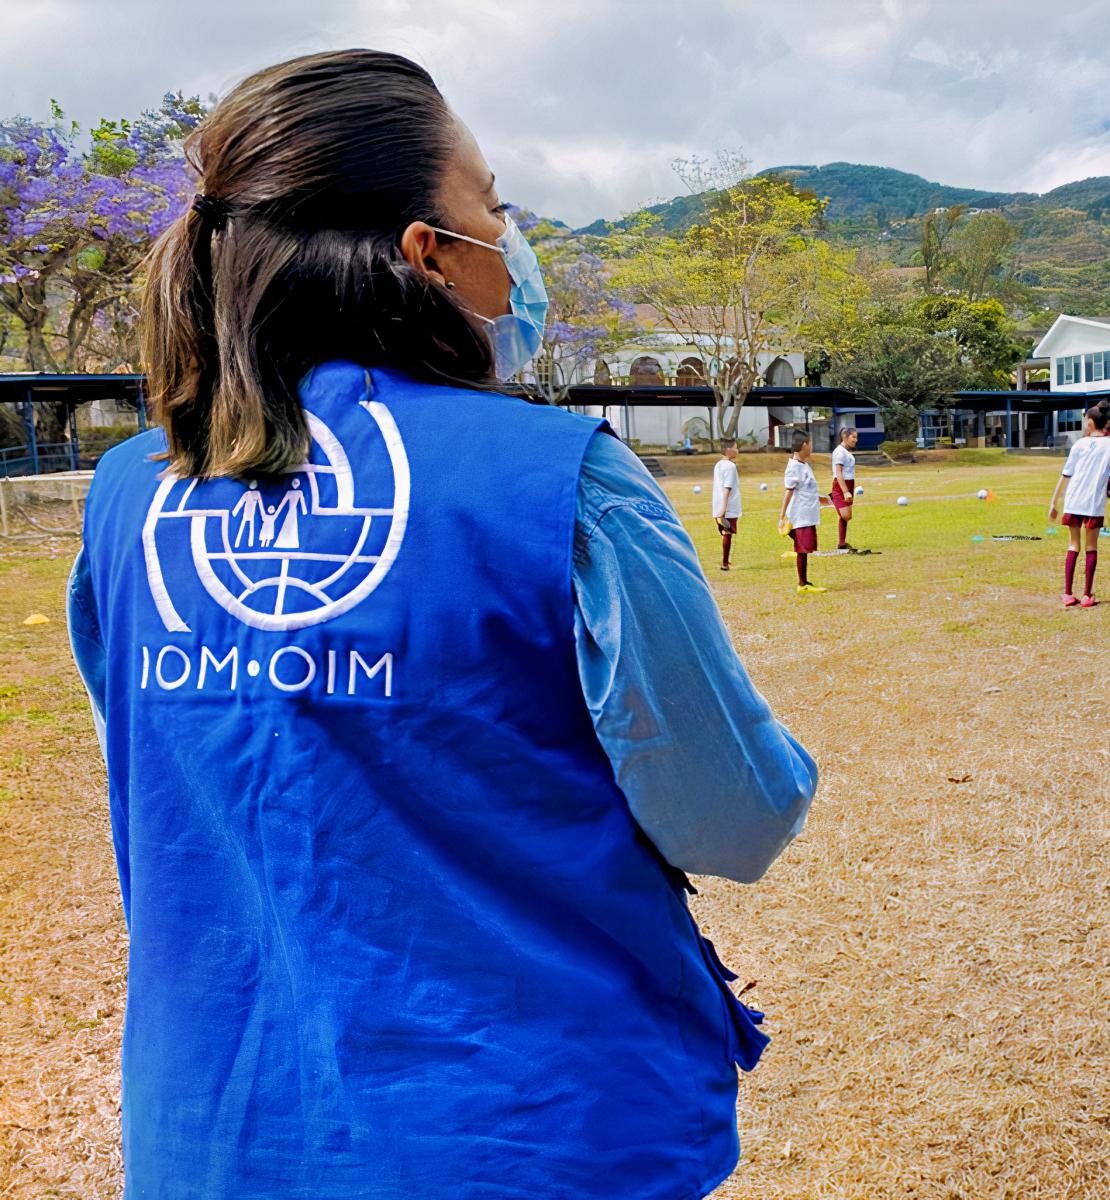 Una mujer con un chaleco de la OIM mira hacia un campo de fútbol con muchos niños y niñas jugando al fútbol.